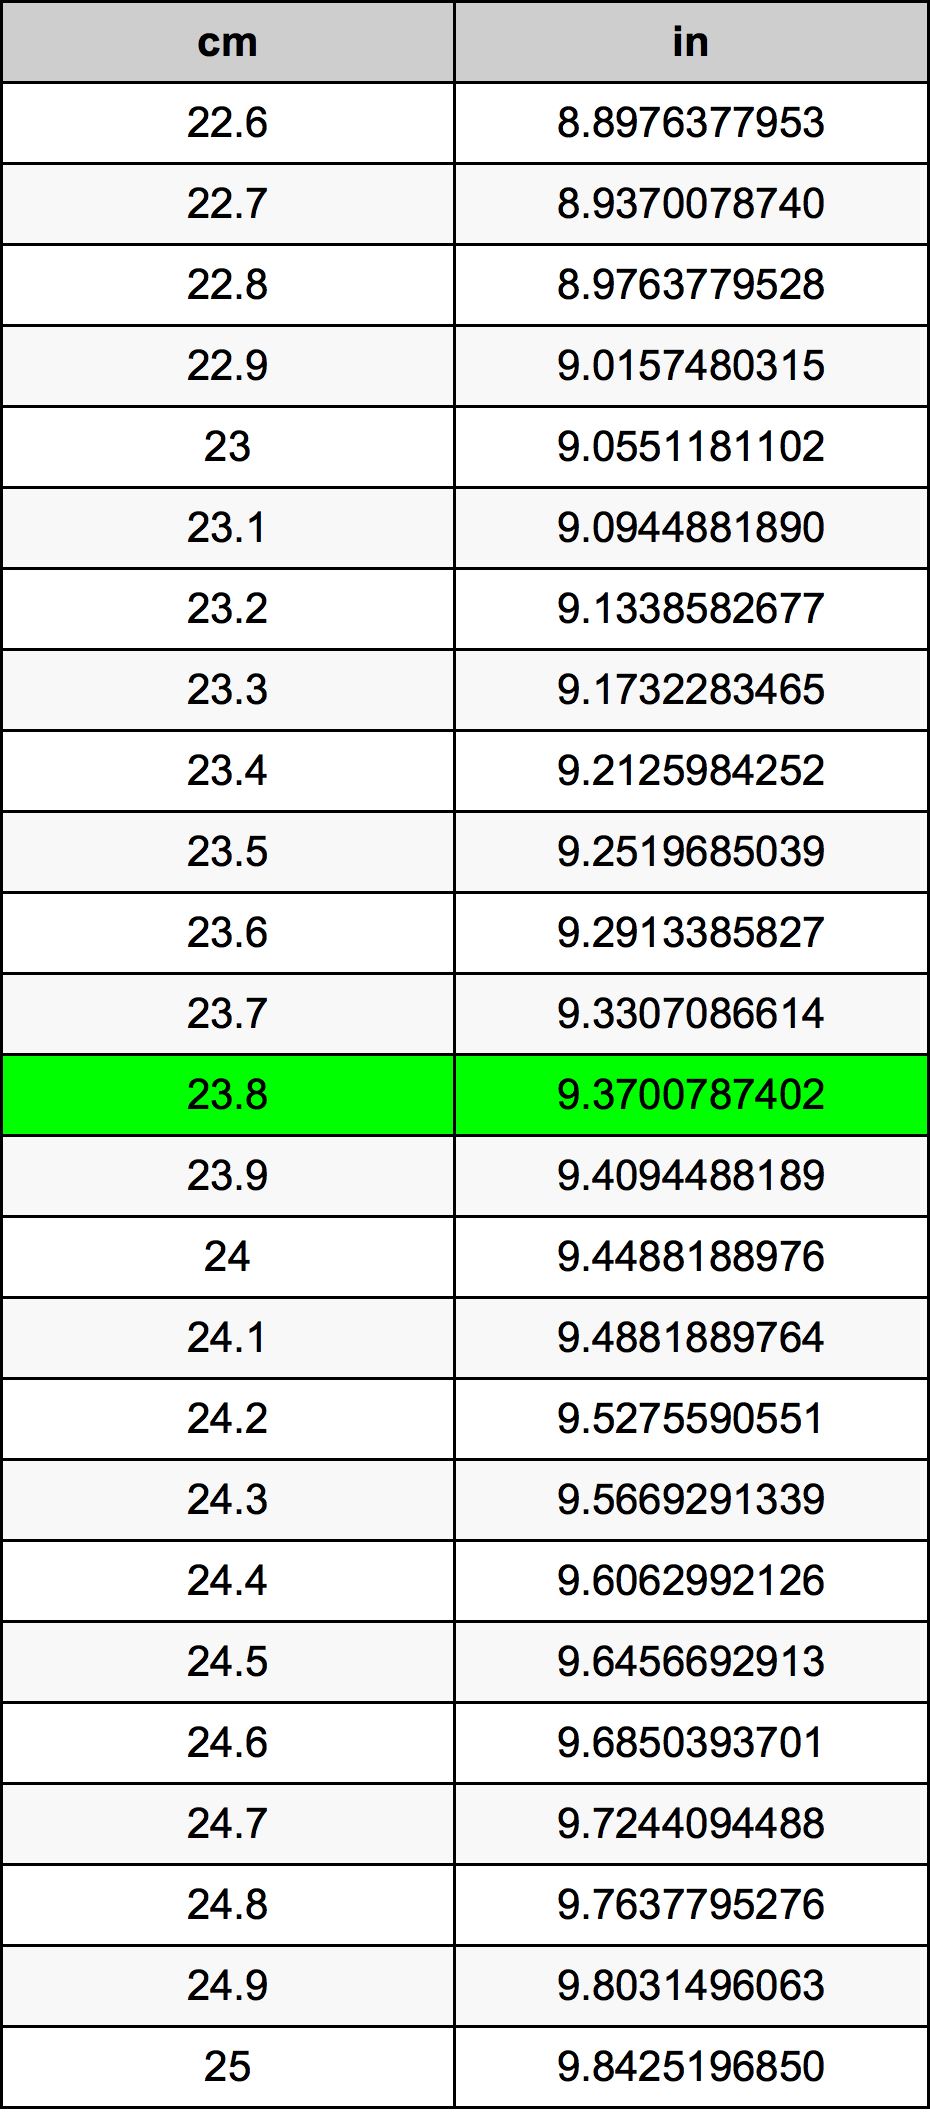 23.8 Centiméter átszámítási táblázat